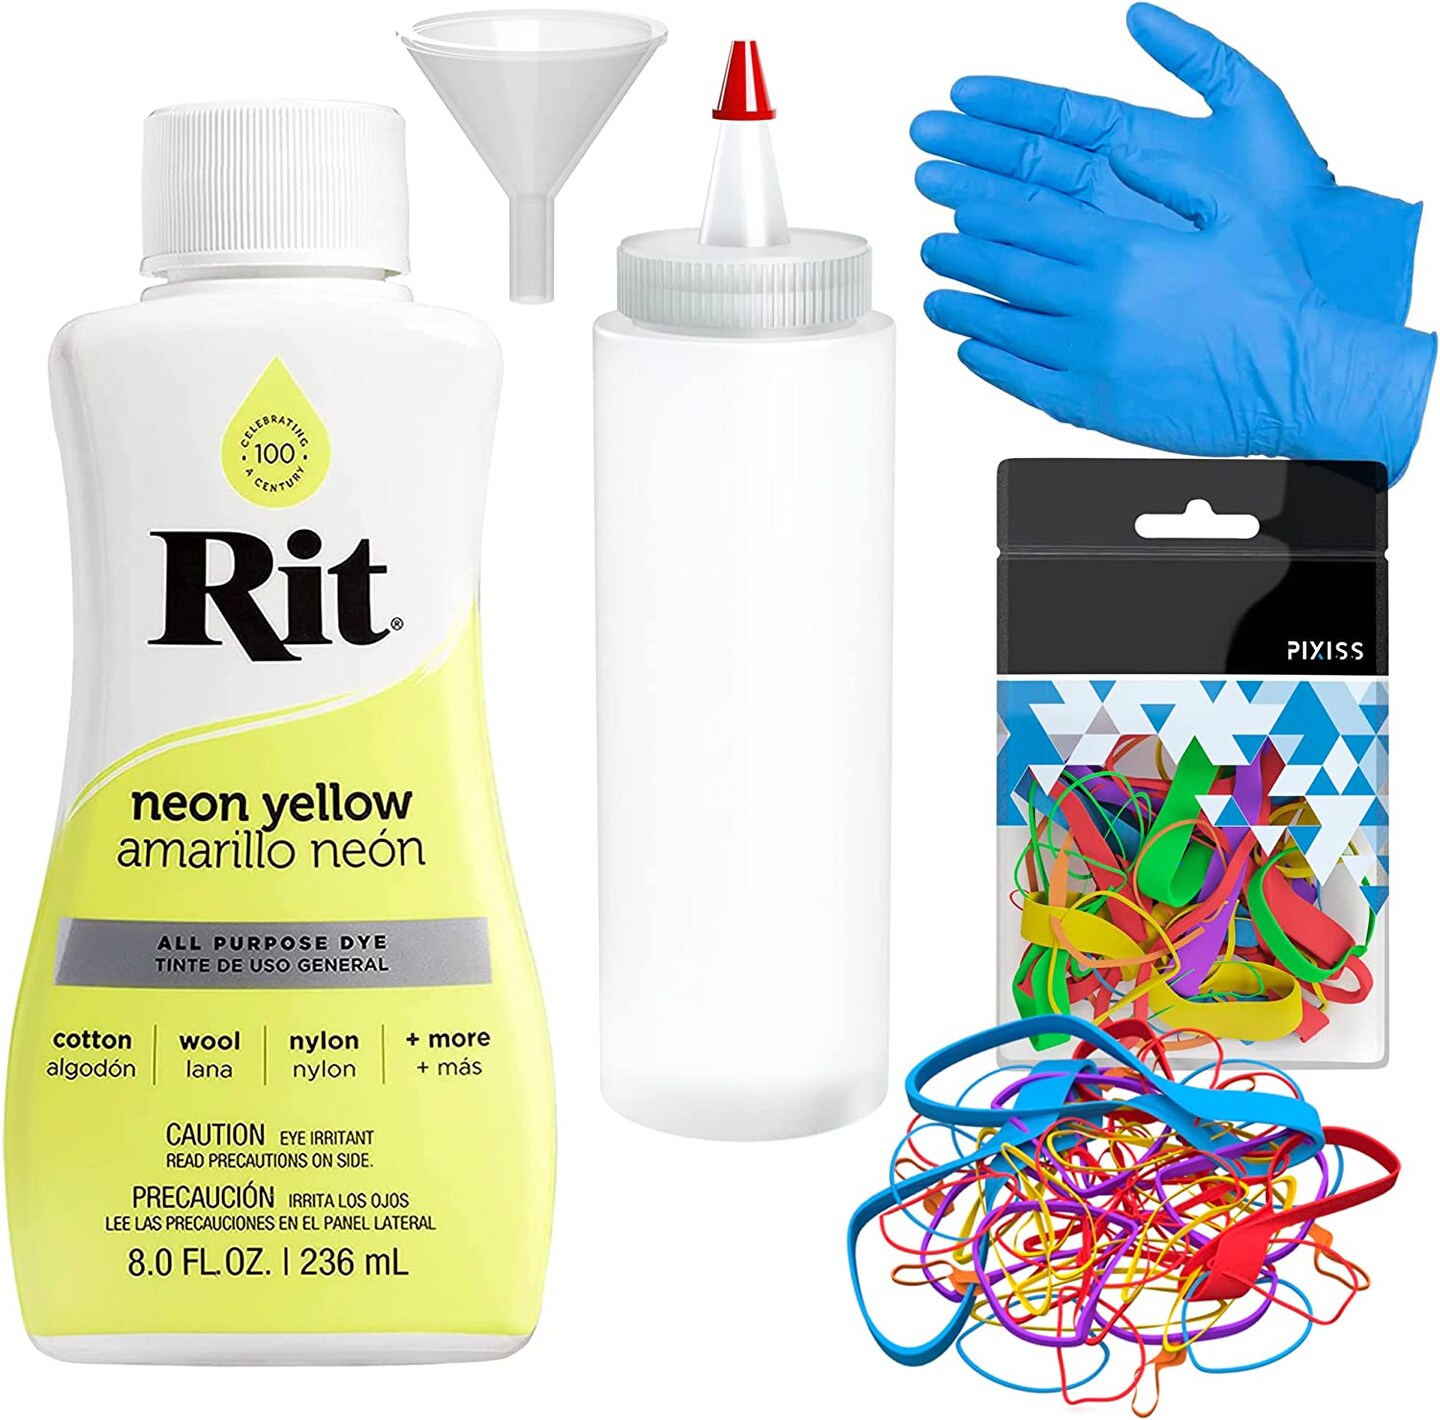 Rit Dye Liquid Neon Yellow All-Purpose Dye 8oz, Pixiss Tie Dye Accessories Bundle